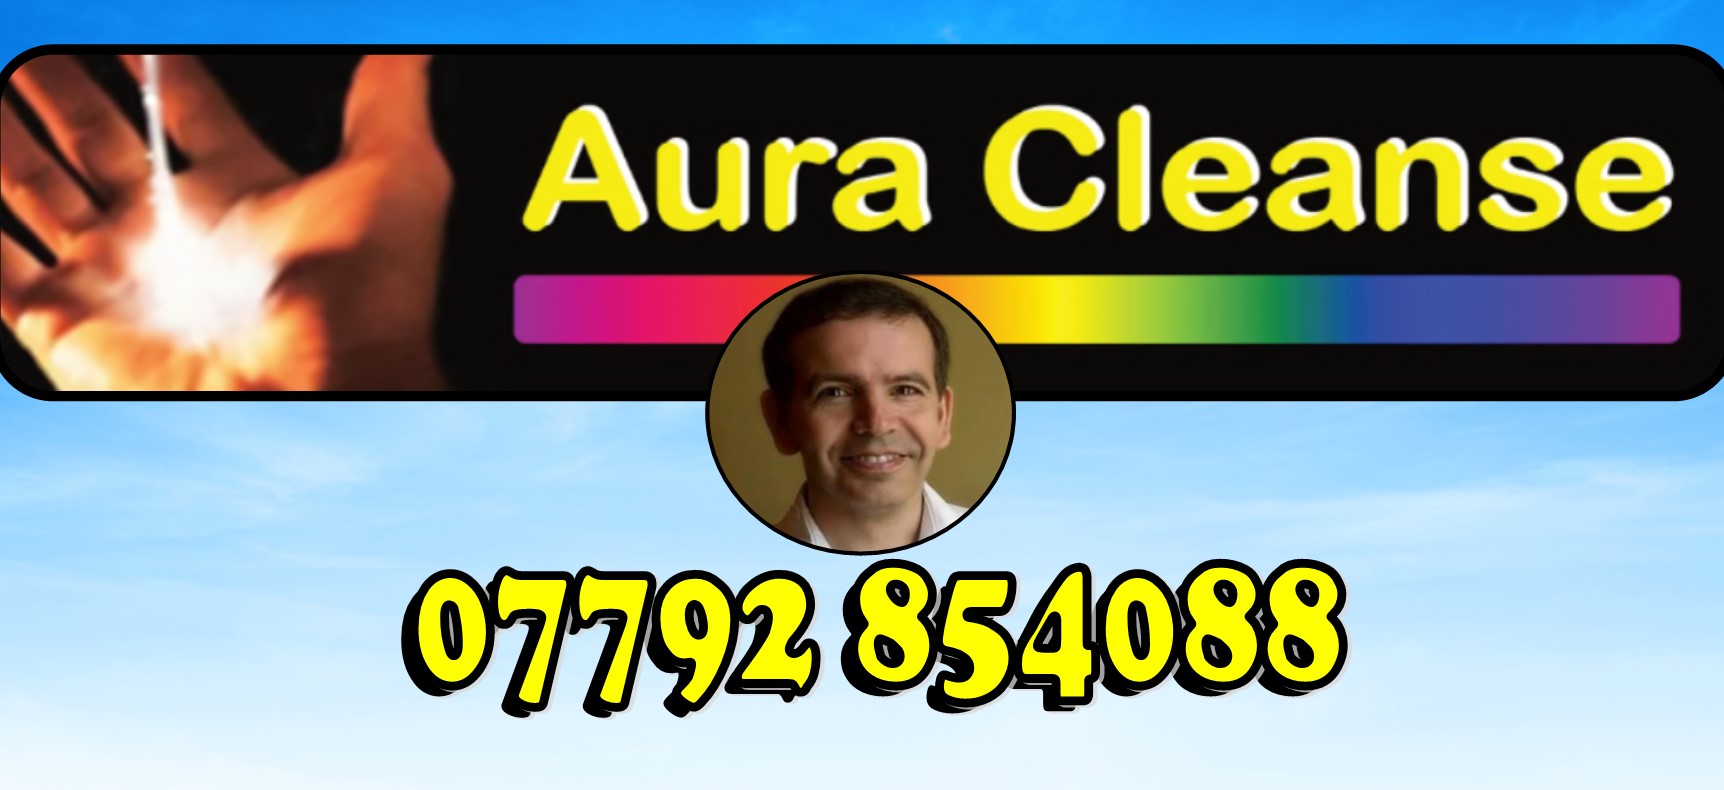 Aura Cleanse - 0044 7792 854088